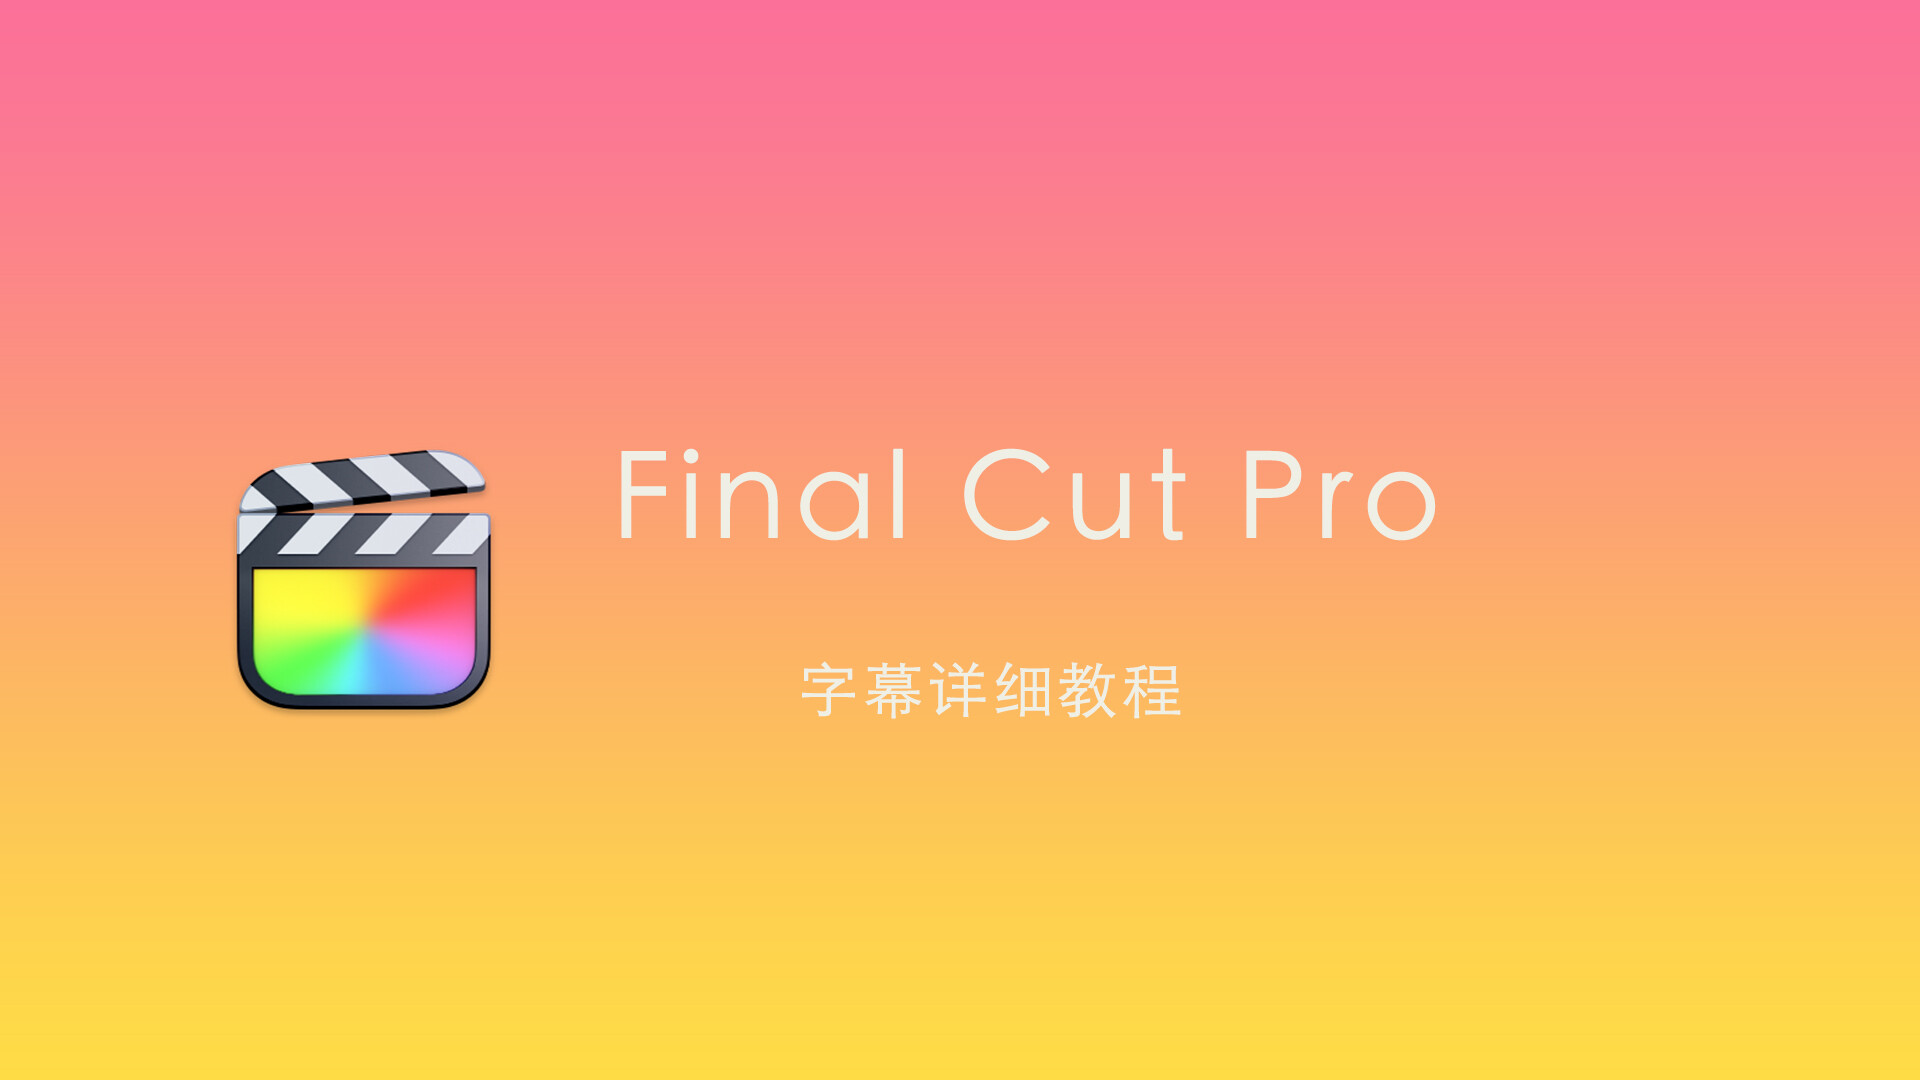 Final Cut Pro 中文新手教程 (31)fcpx字幕功能详细使用教程